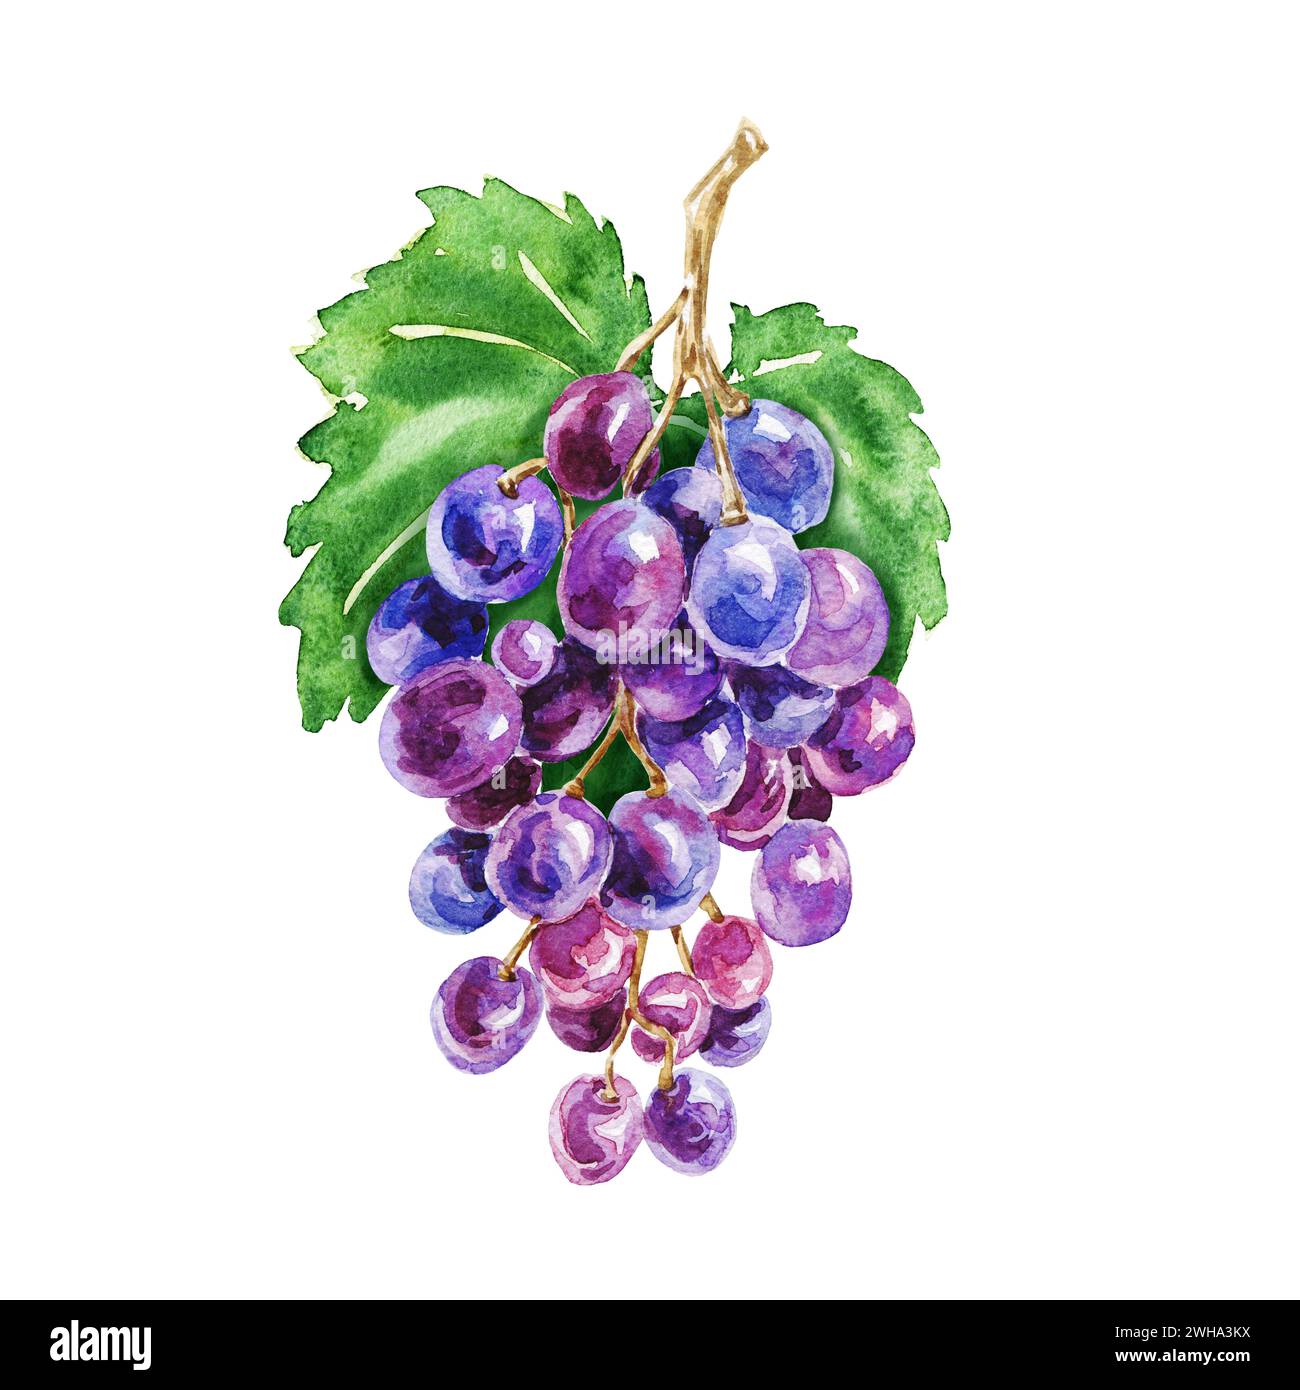 Composition de raisins à l'aquarelle dessinée à la main, délicieux fruits verts et bleus violets isolés sur fond blanc. Illustration réaliste de la nourriture. Banque D'Images